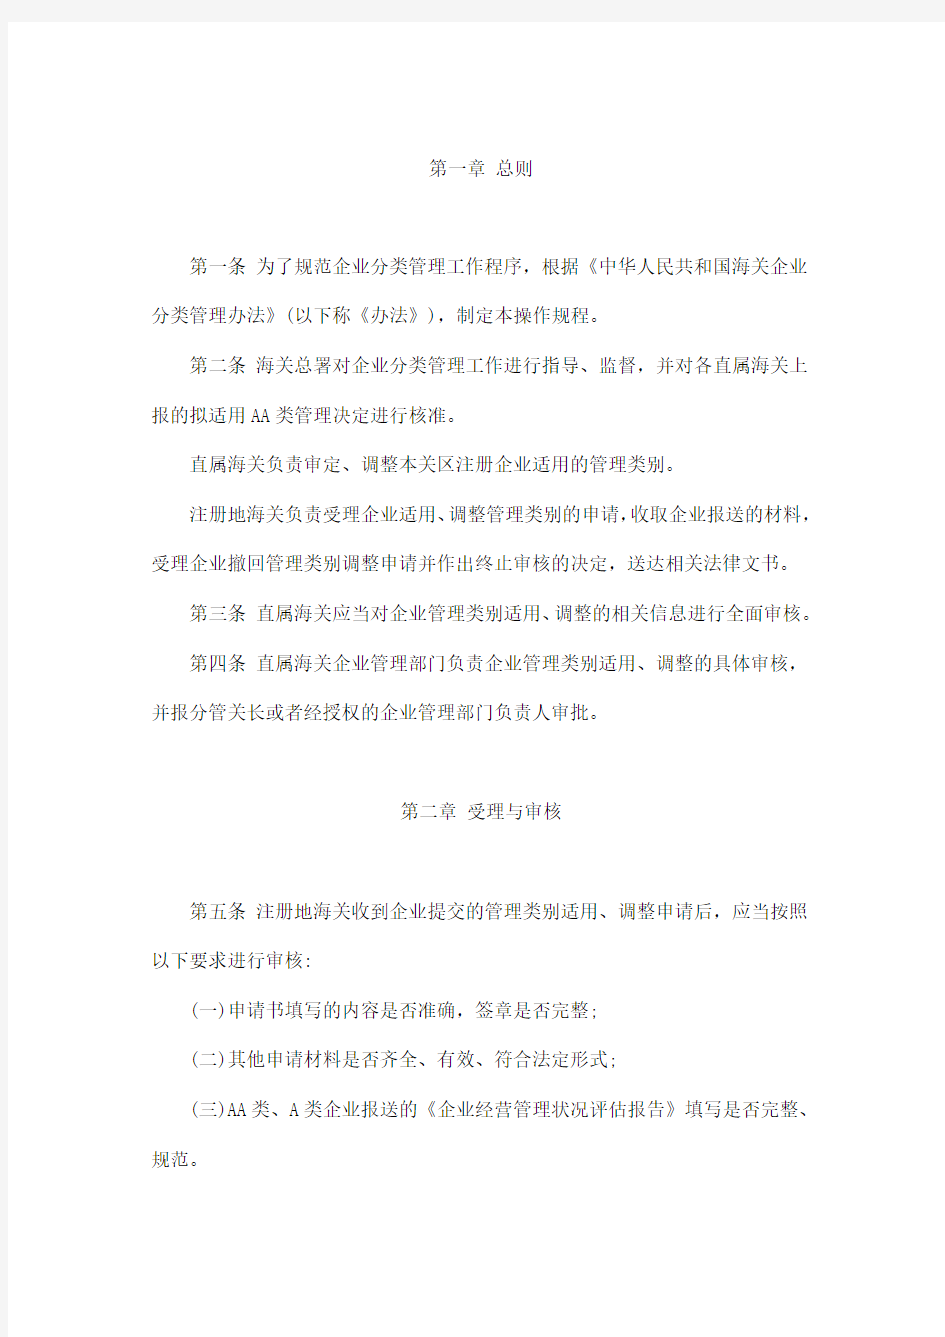 中华人民共和国海关企业分类管理操作规程(试行)